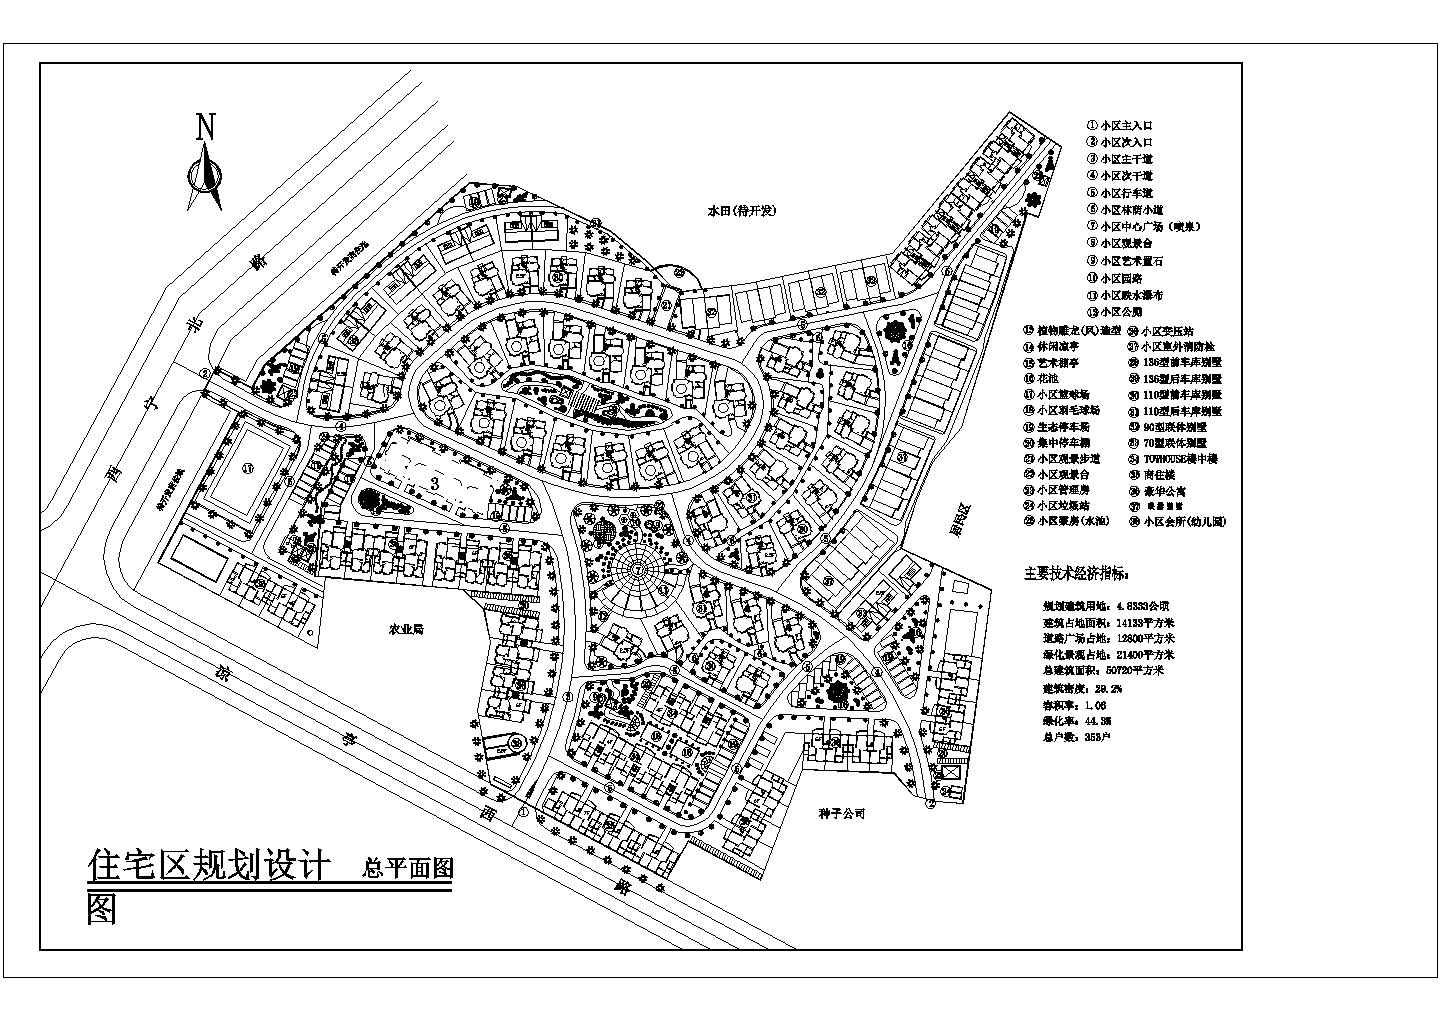 规划建筑用地4.8333公顷住宅区规划设计总平面图1张cad